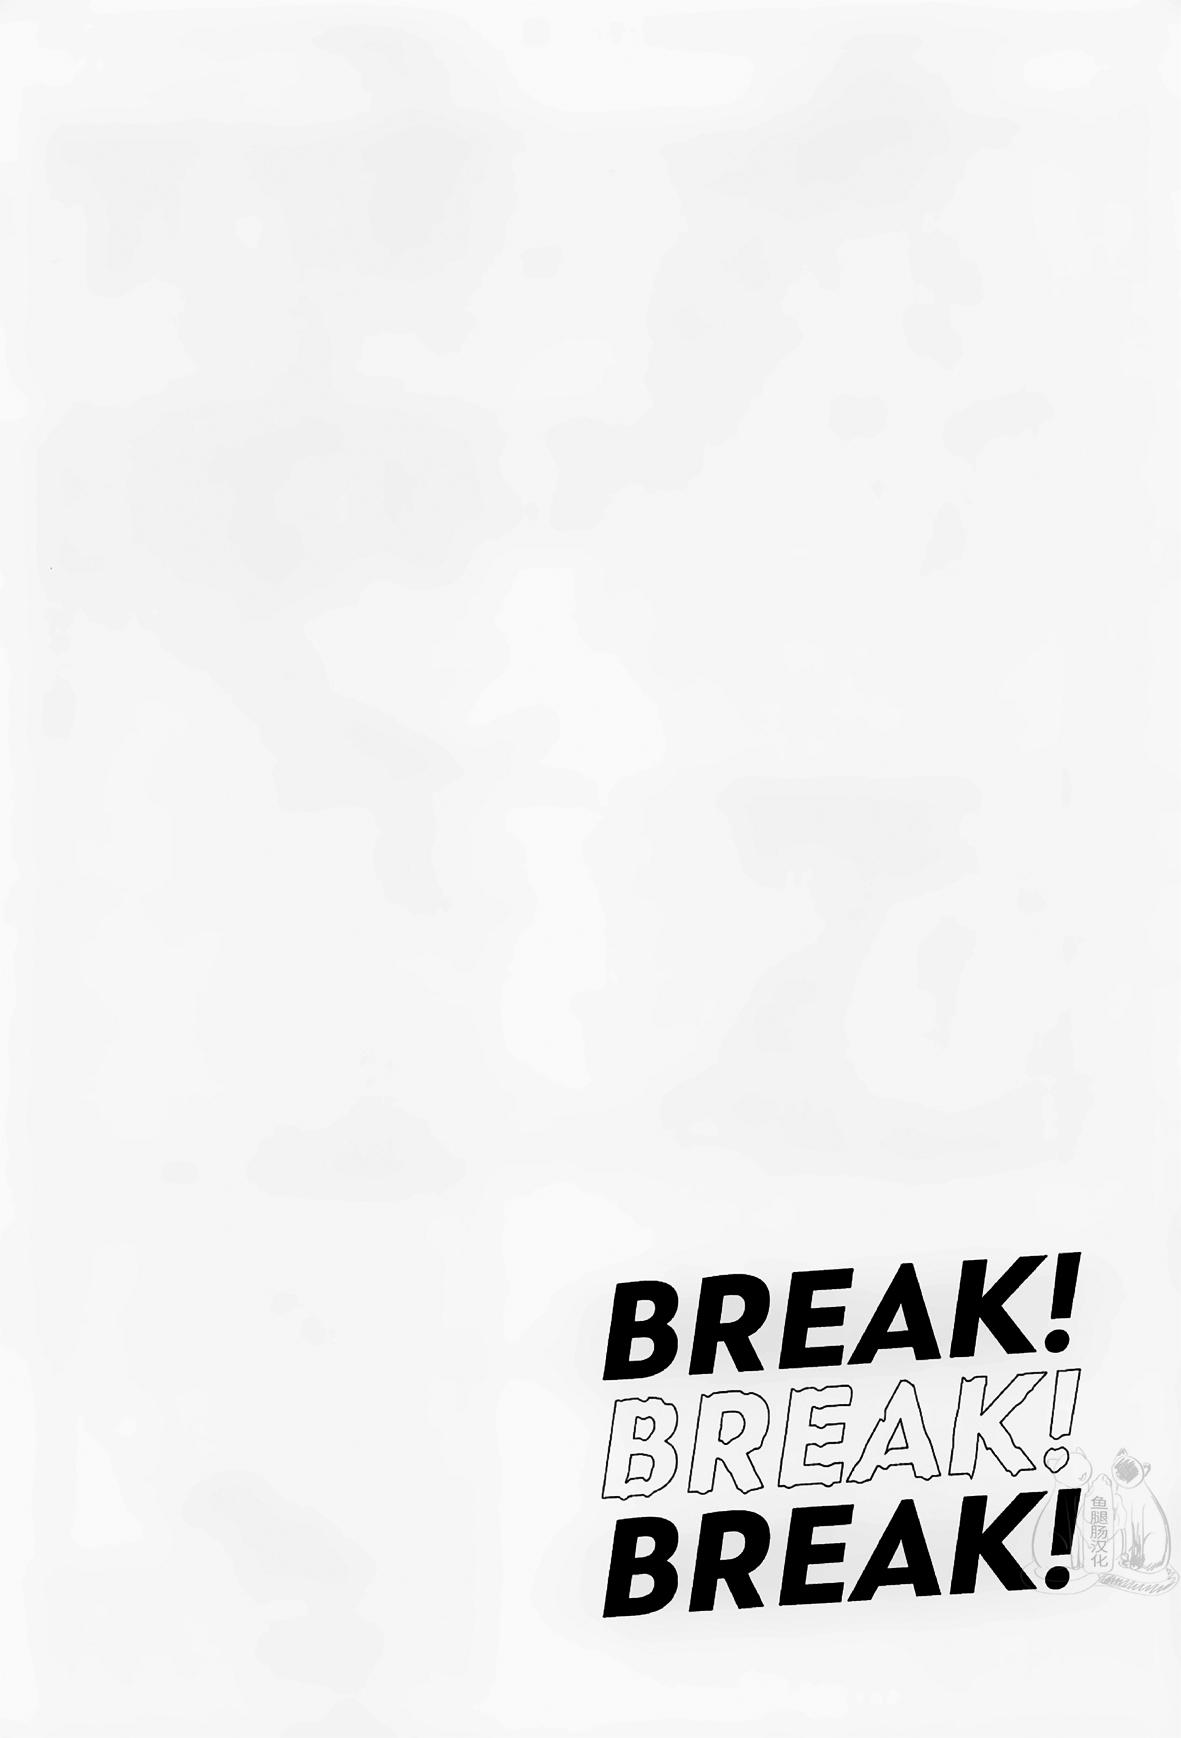 Cavala BREAK! BREAK! BREAK! - Tokyo revengers Sex Massage - Page 11